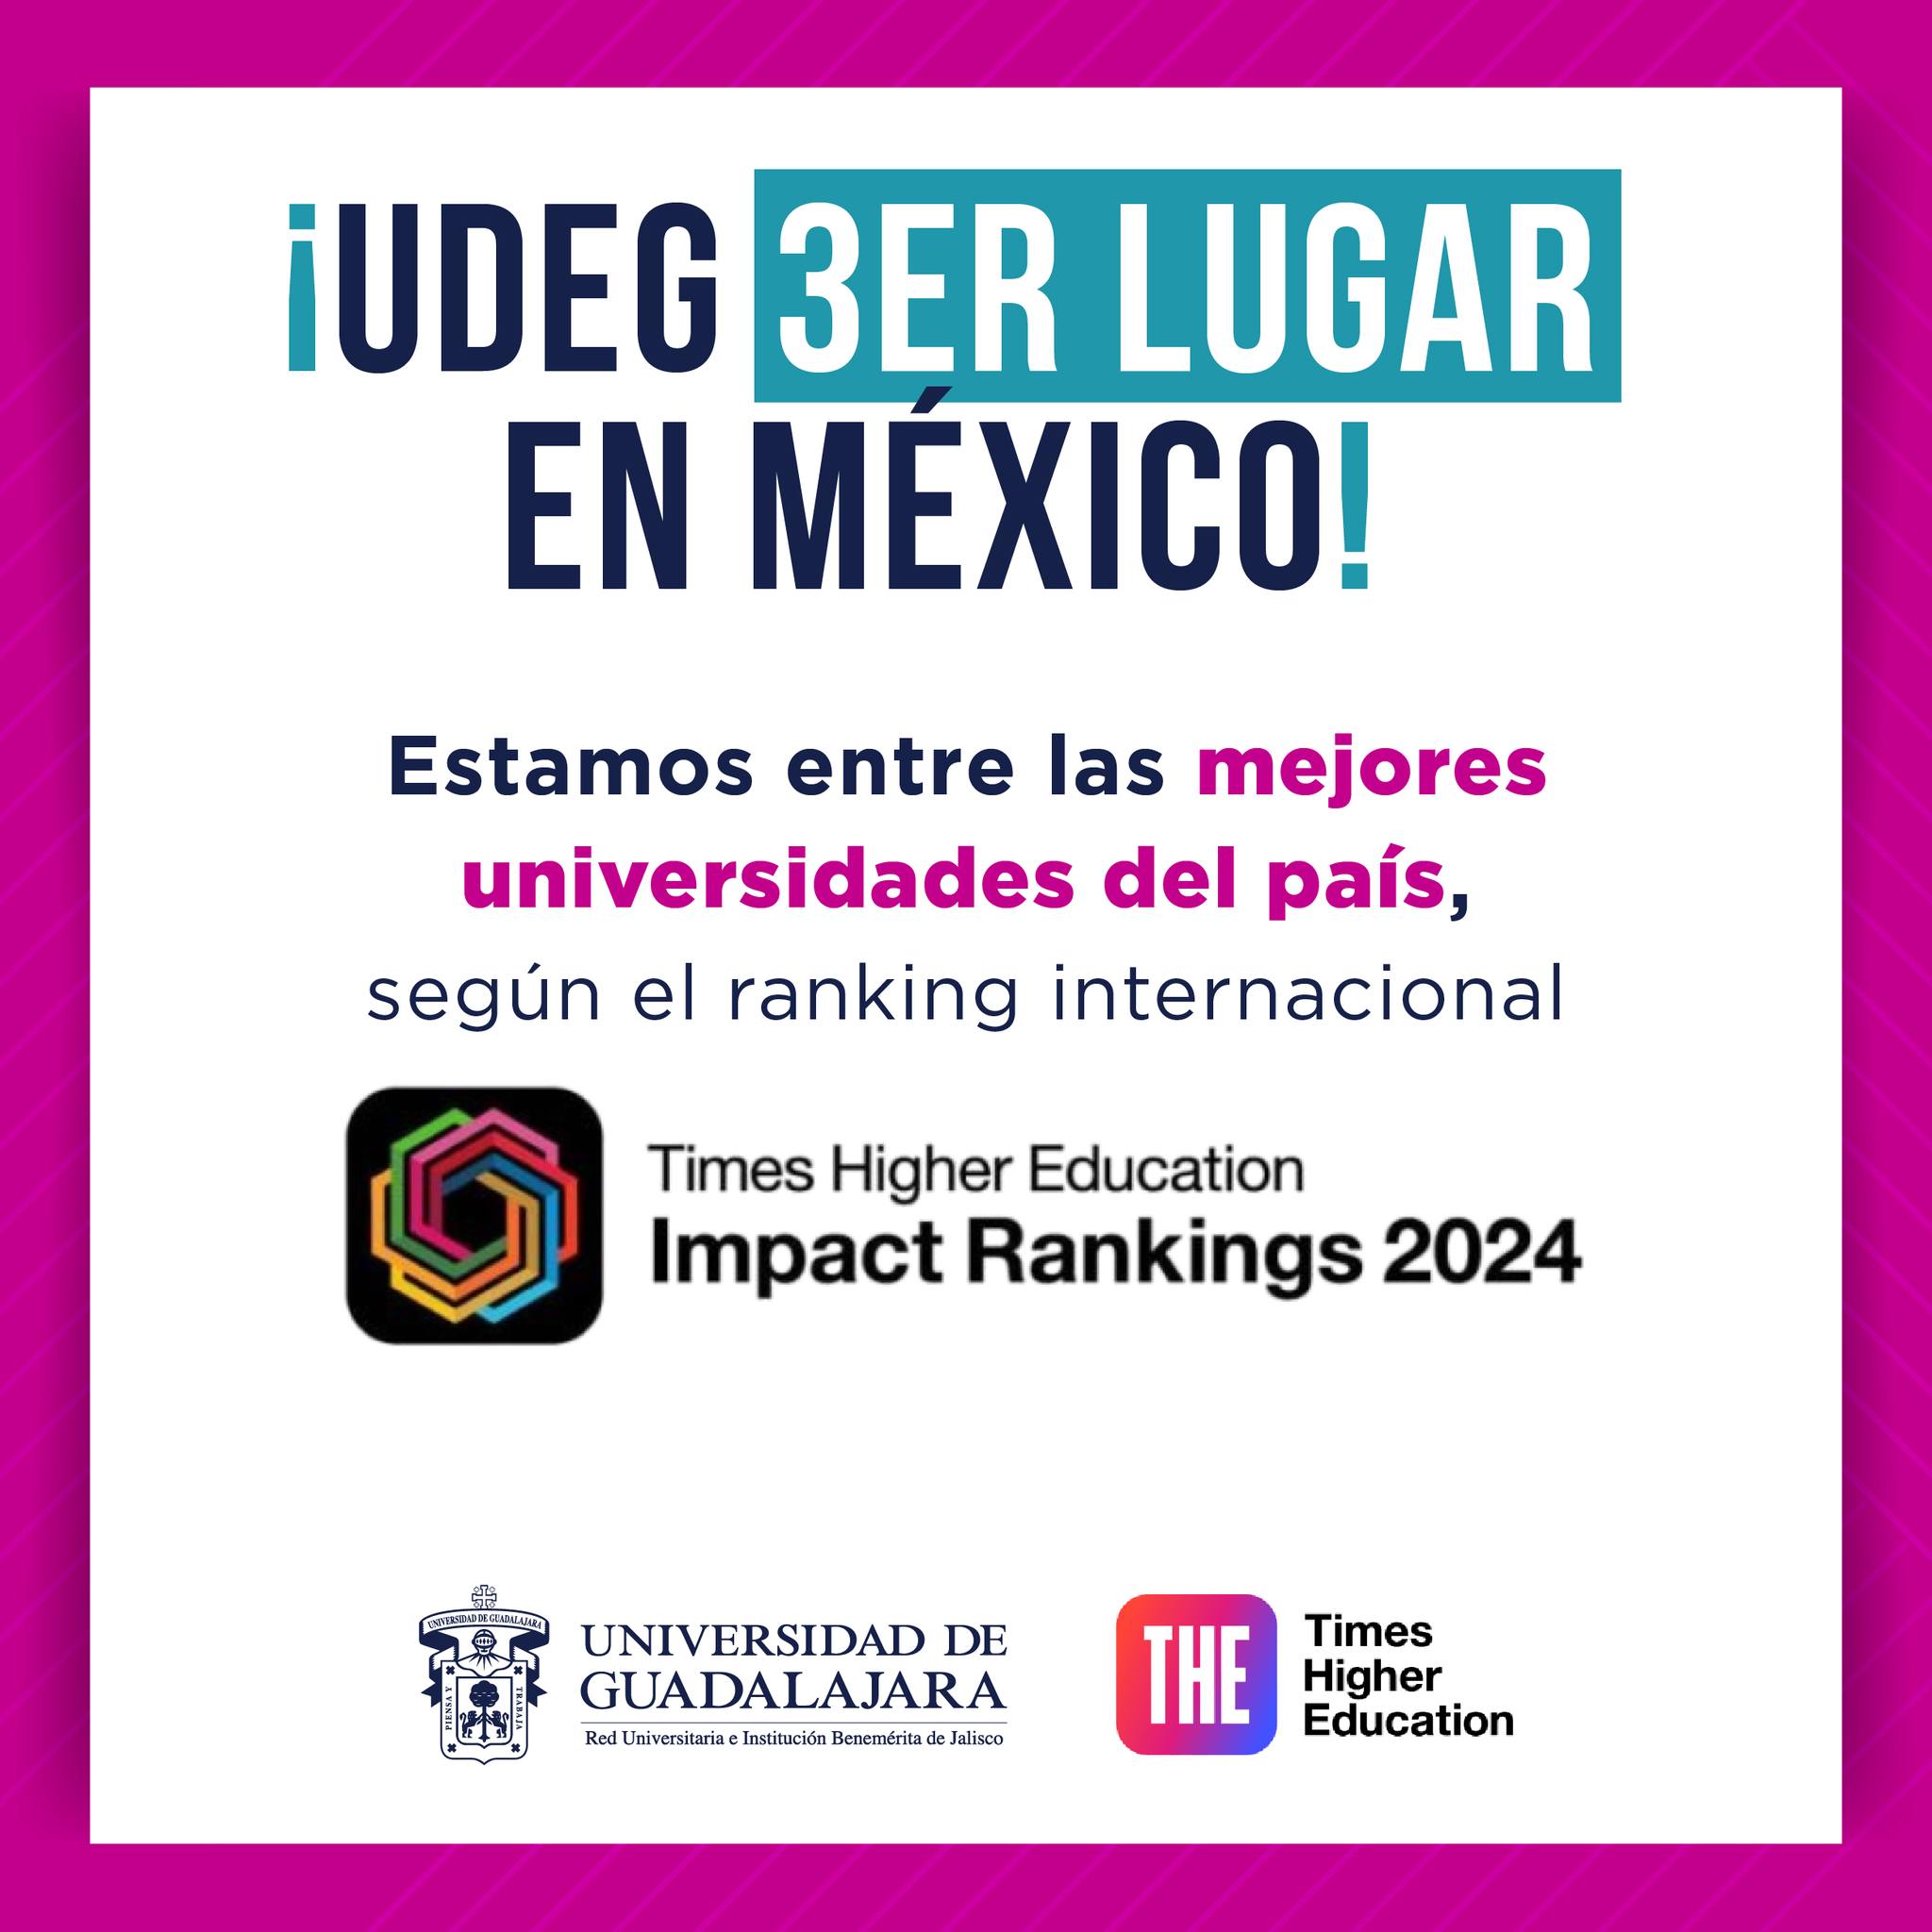 UDG la universidad número 3 en México